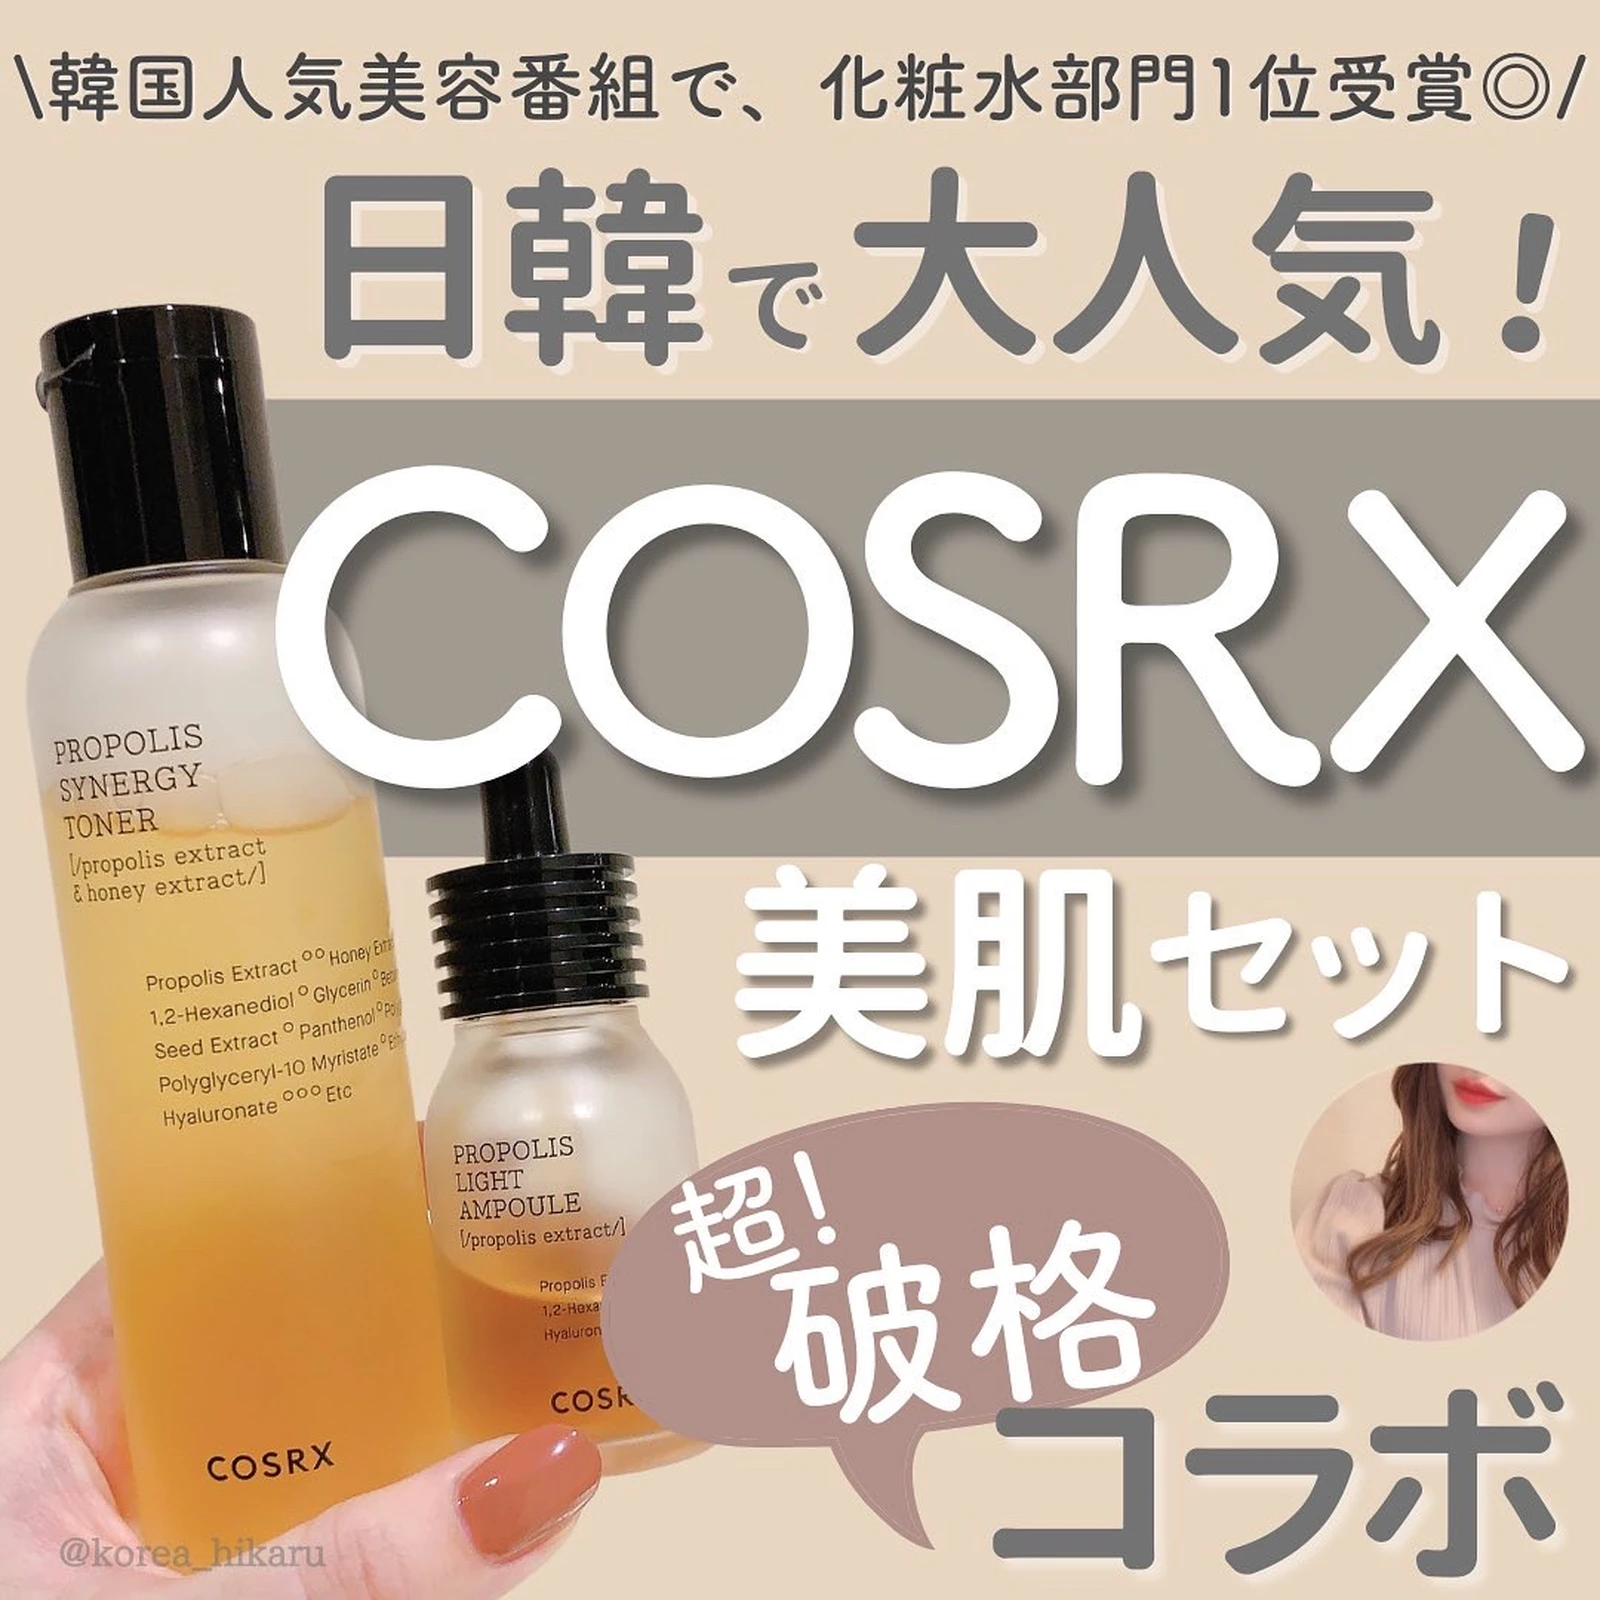 Cosrx ピュアフィットシカトナー 化粧水 サンプル 基礎化粧品